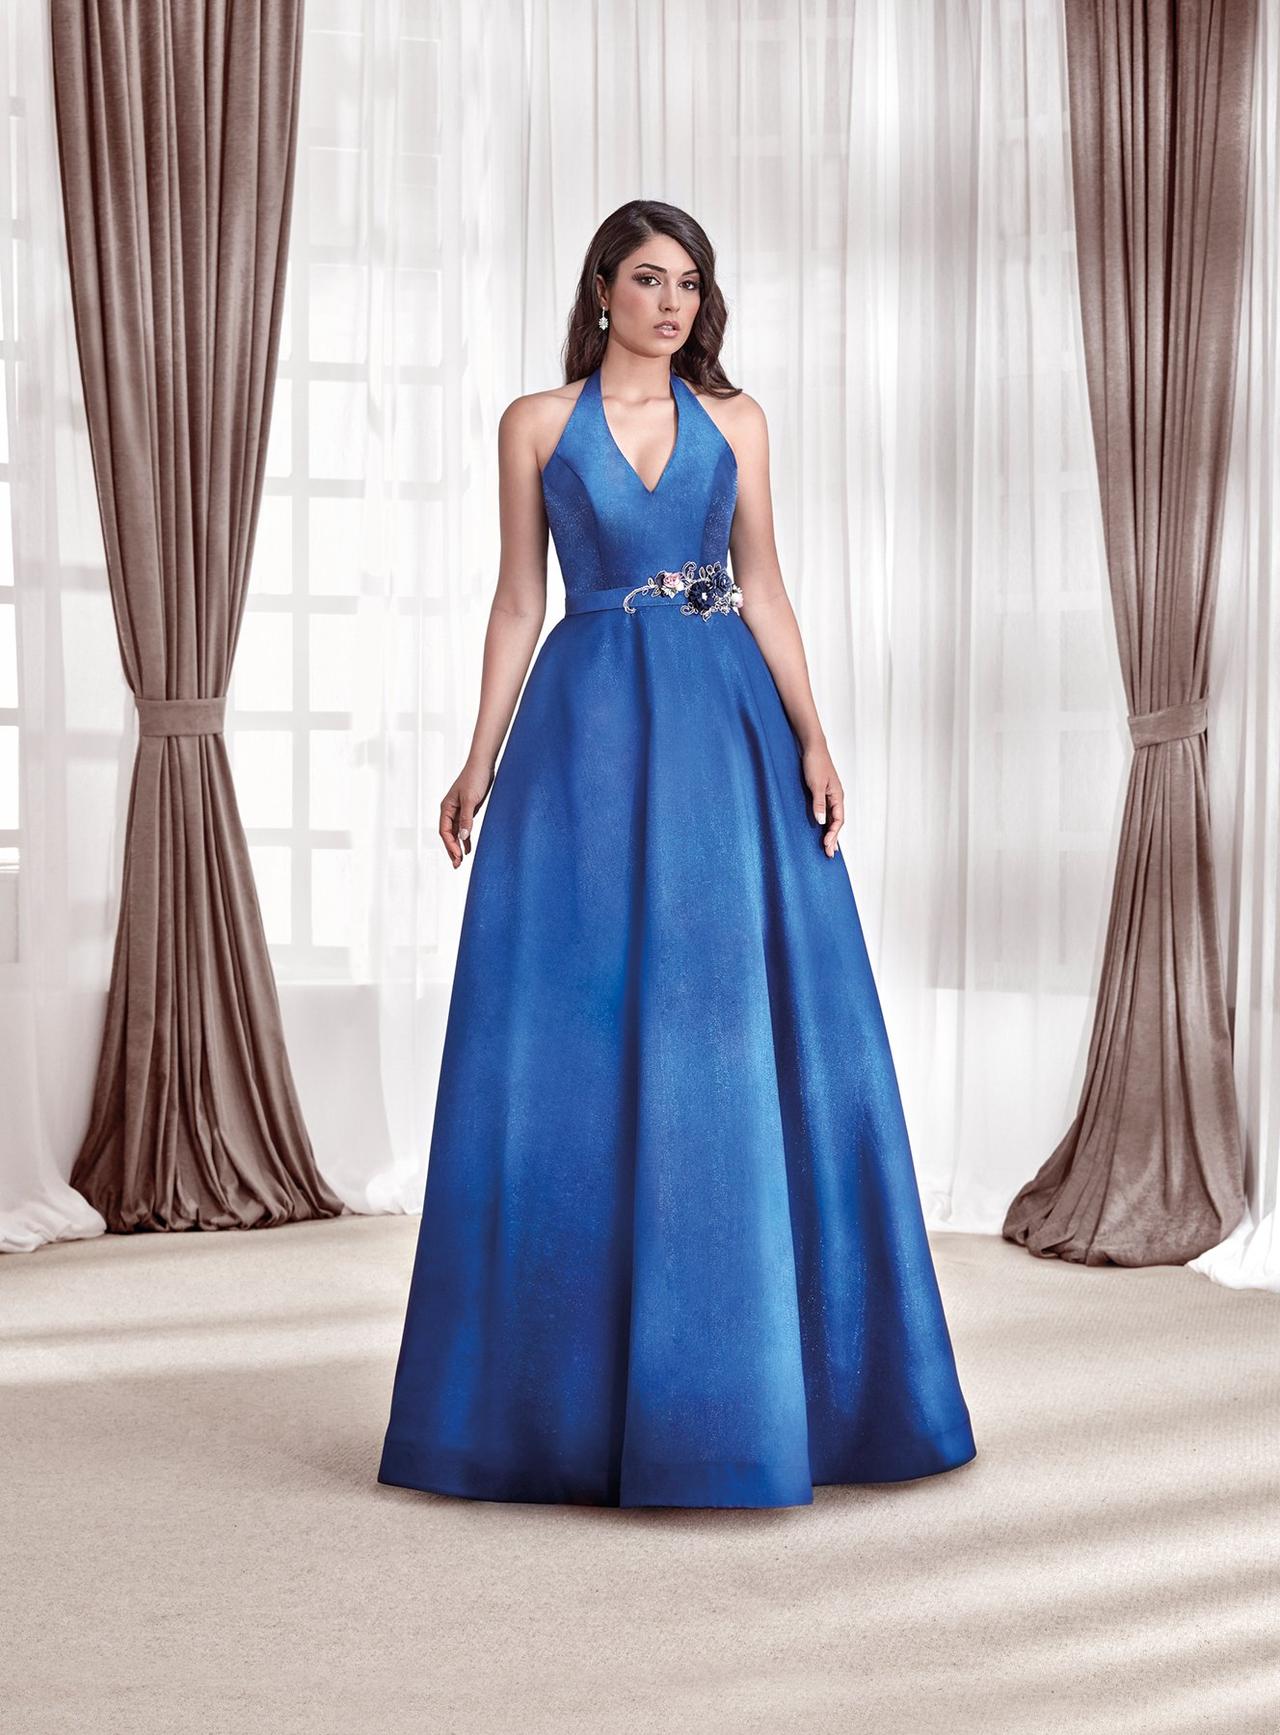 Contrapartida simpático ir a buscar 45 vestidos azules de fiesta para un look de invitada de infarto -  bodas.com.mx